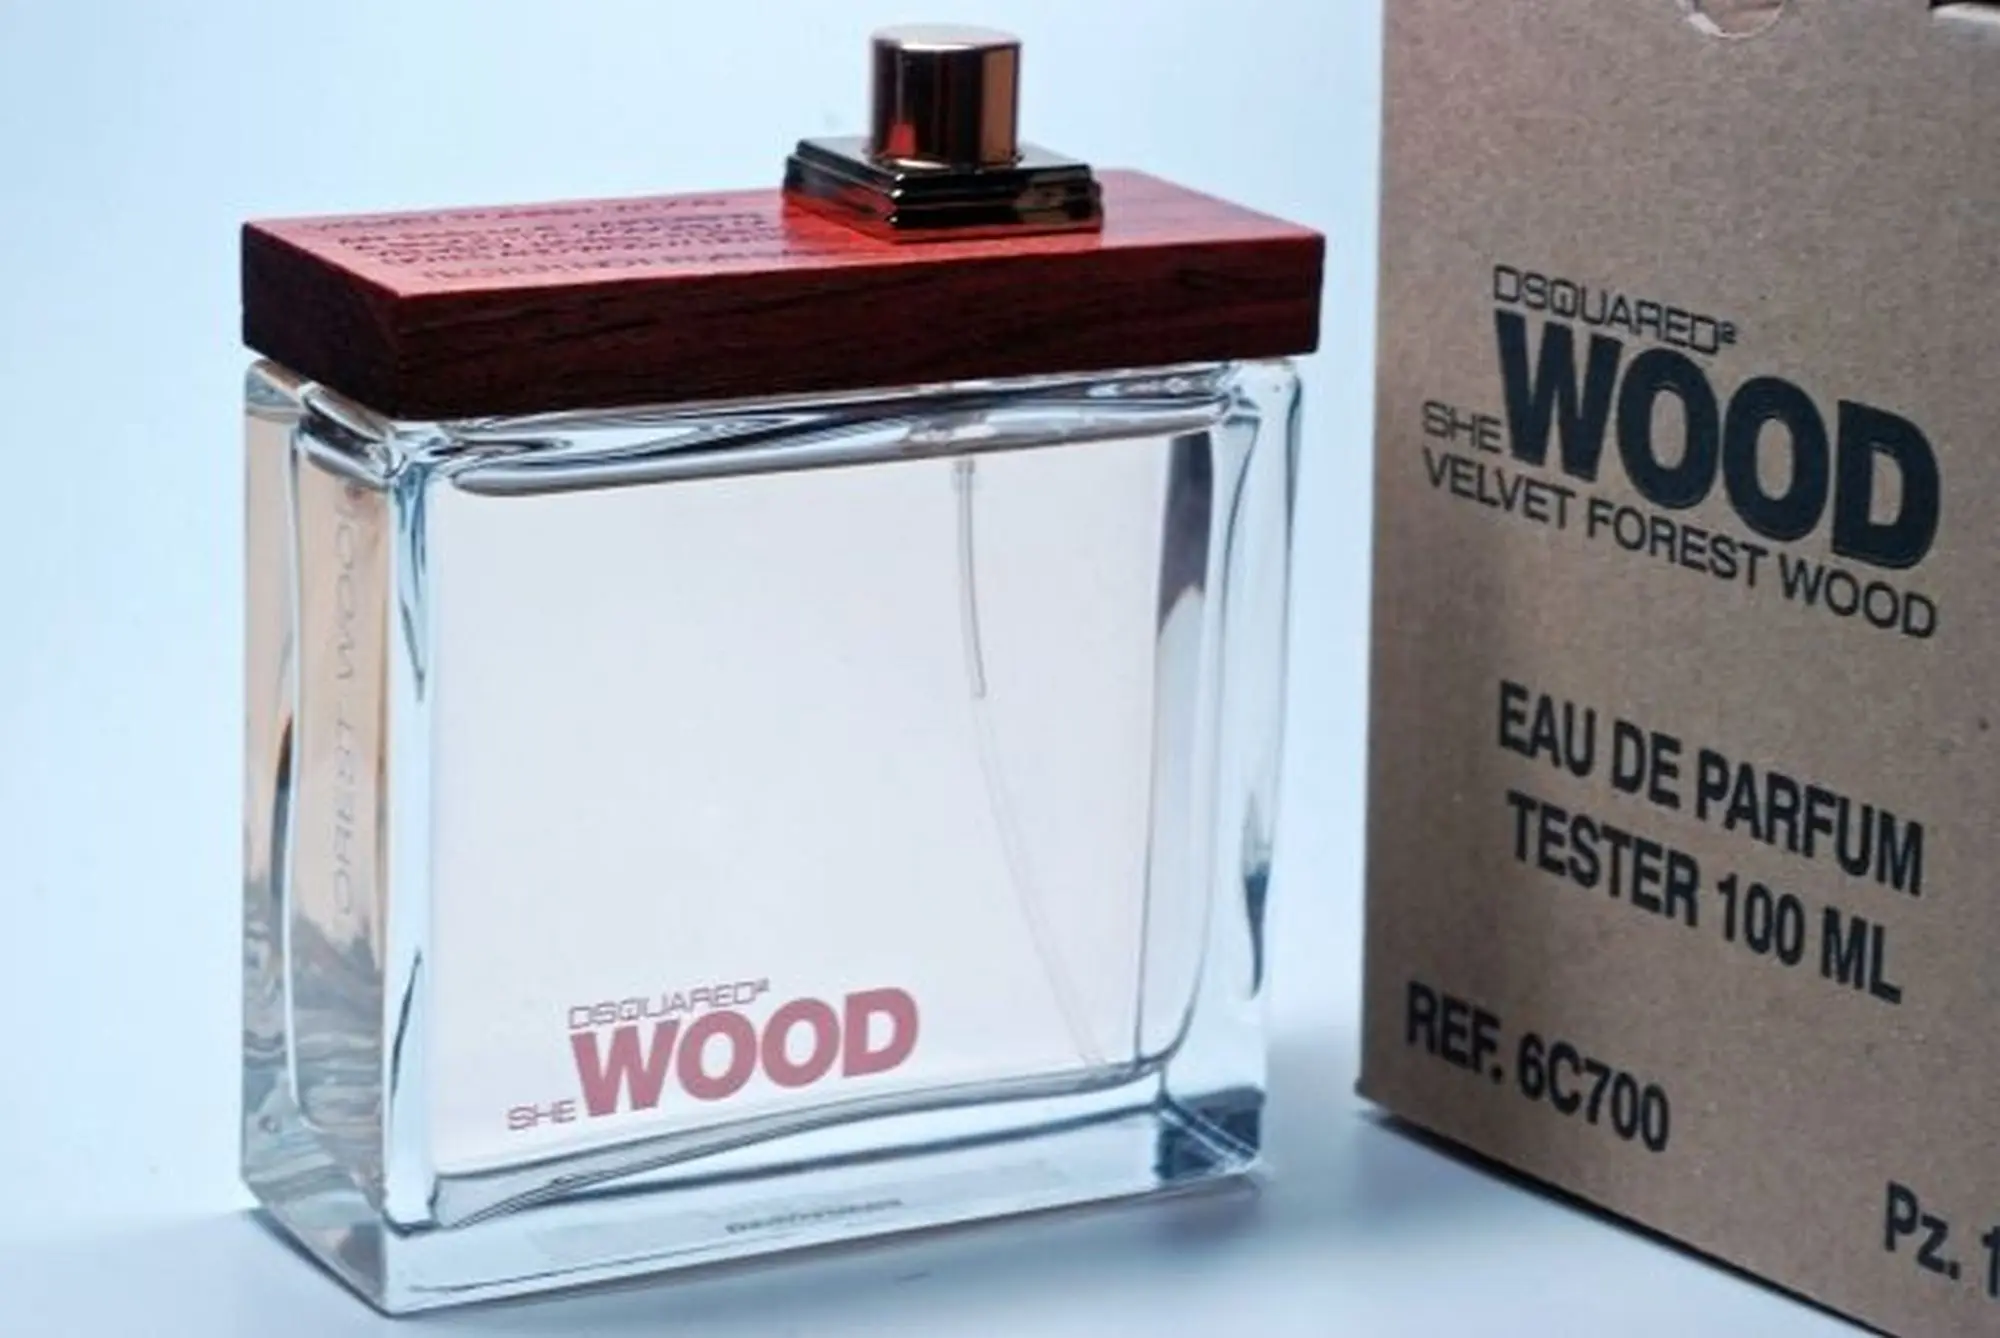 She Wood Velvet Forest Wood Eau de Parfum 100 ml